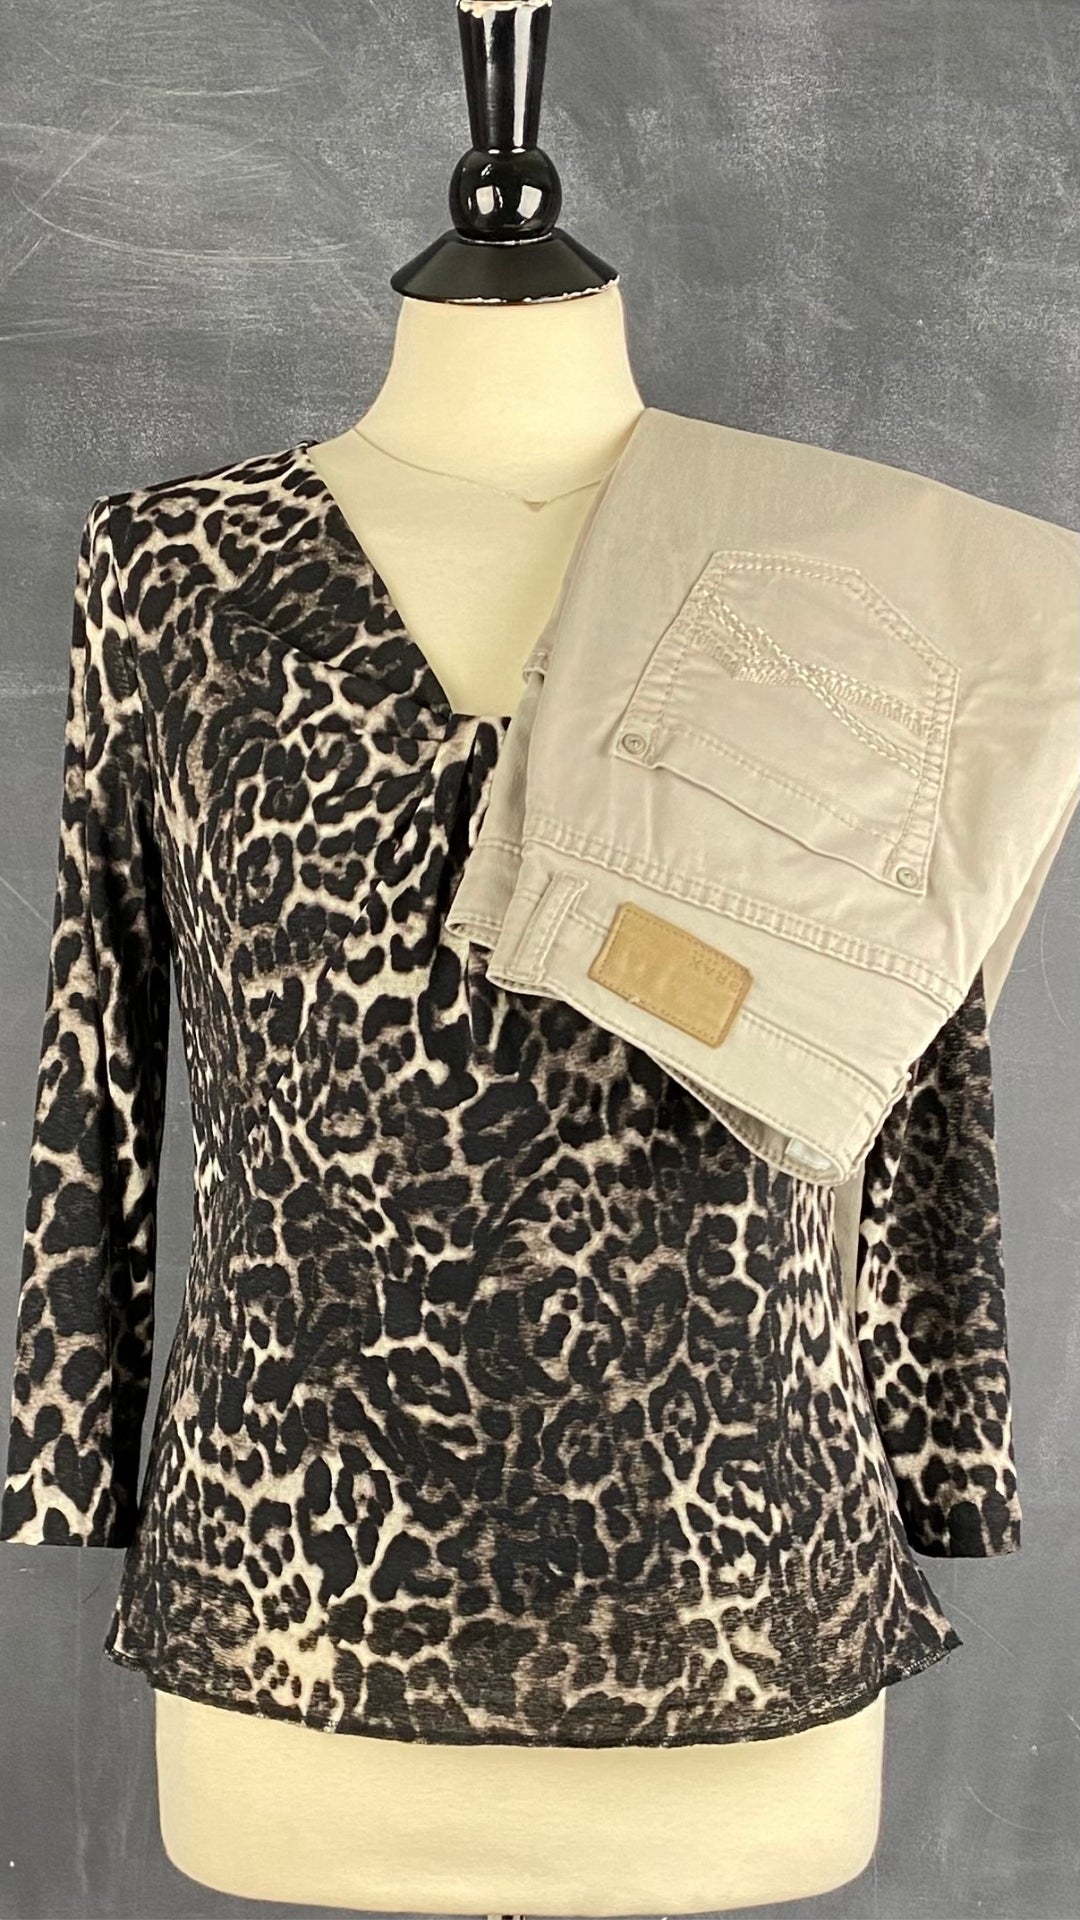 Chandail léger à motif léopard Jones New York, taille small. Vue de l'agencement avec le pantalon taupe Brax.